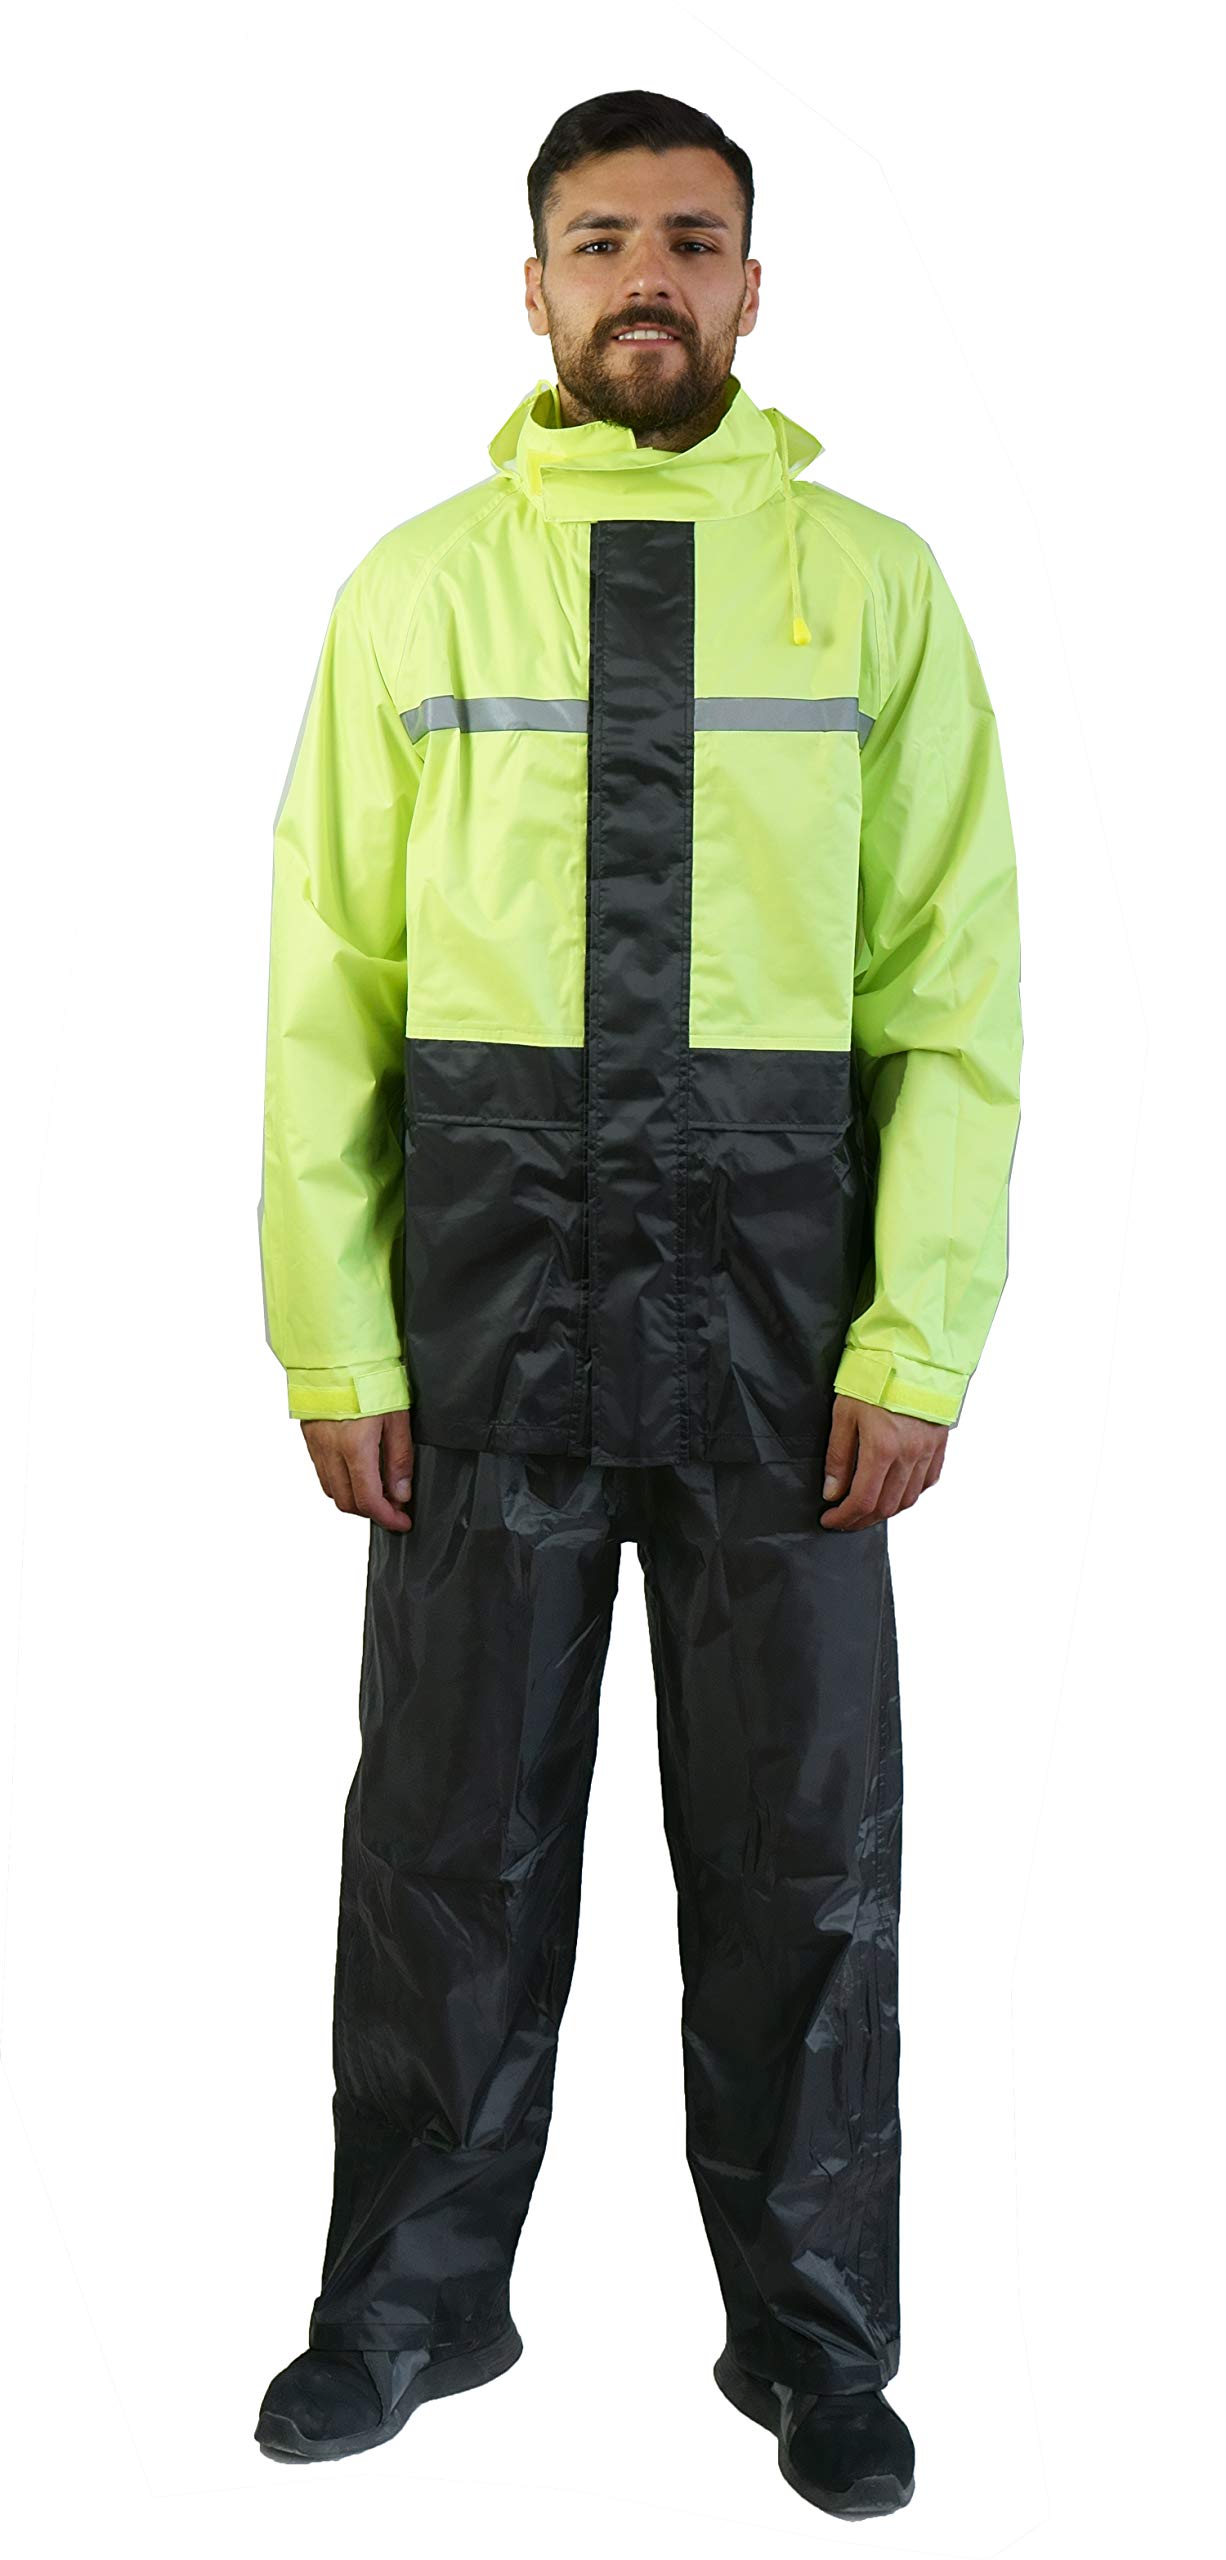 TJ MARVIN E34 Sport Regenschutz Set (Jacke, Hose und Tasche) M Nero Giallo fluo von TJ MARVIN